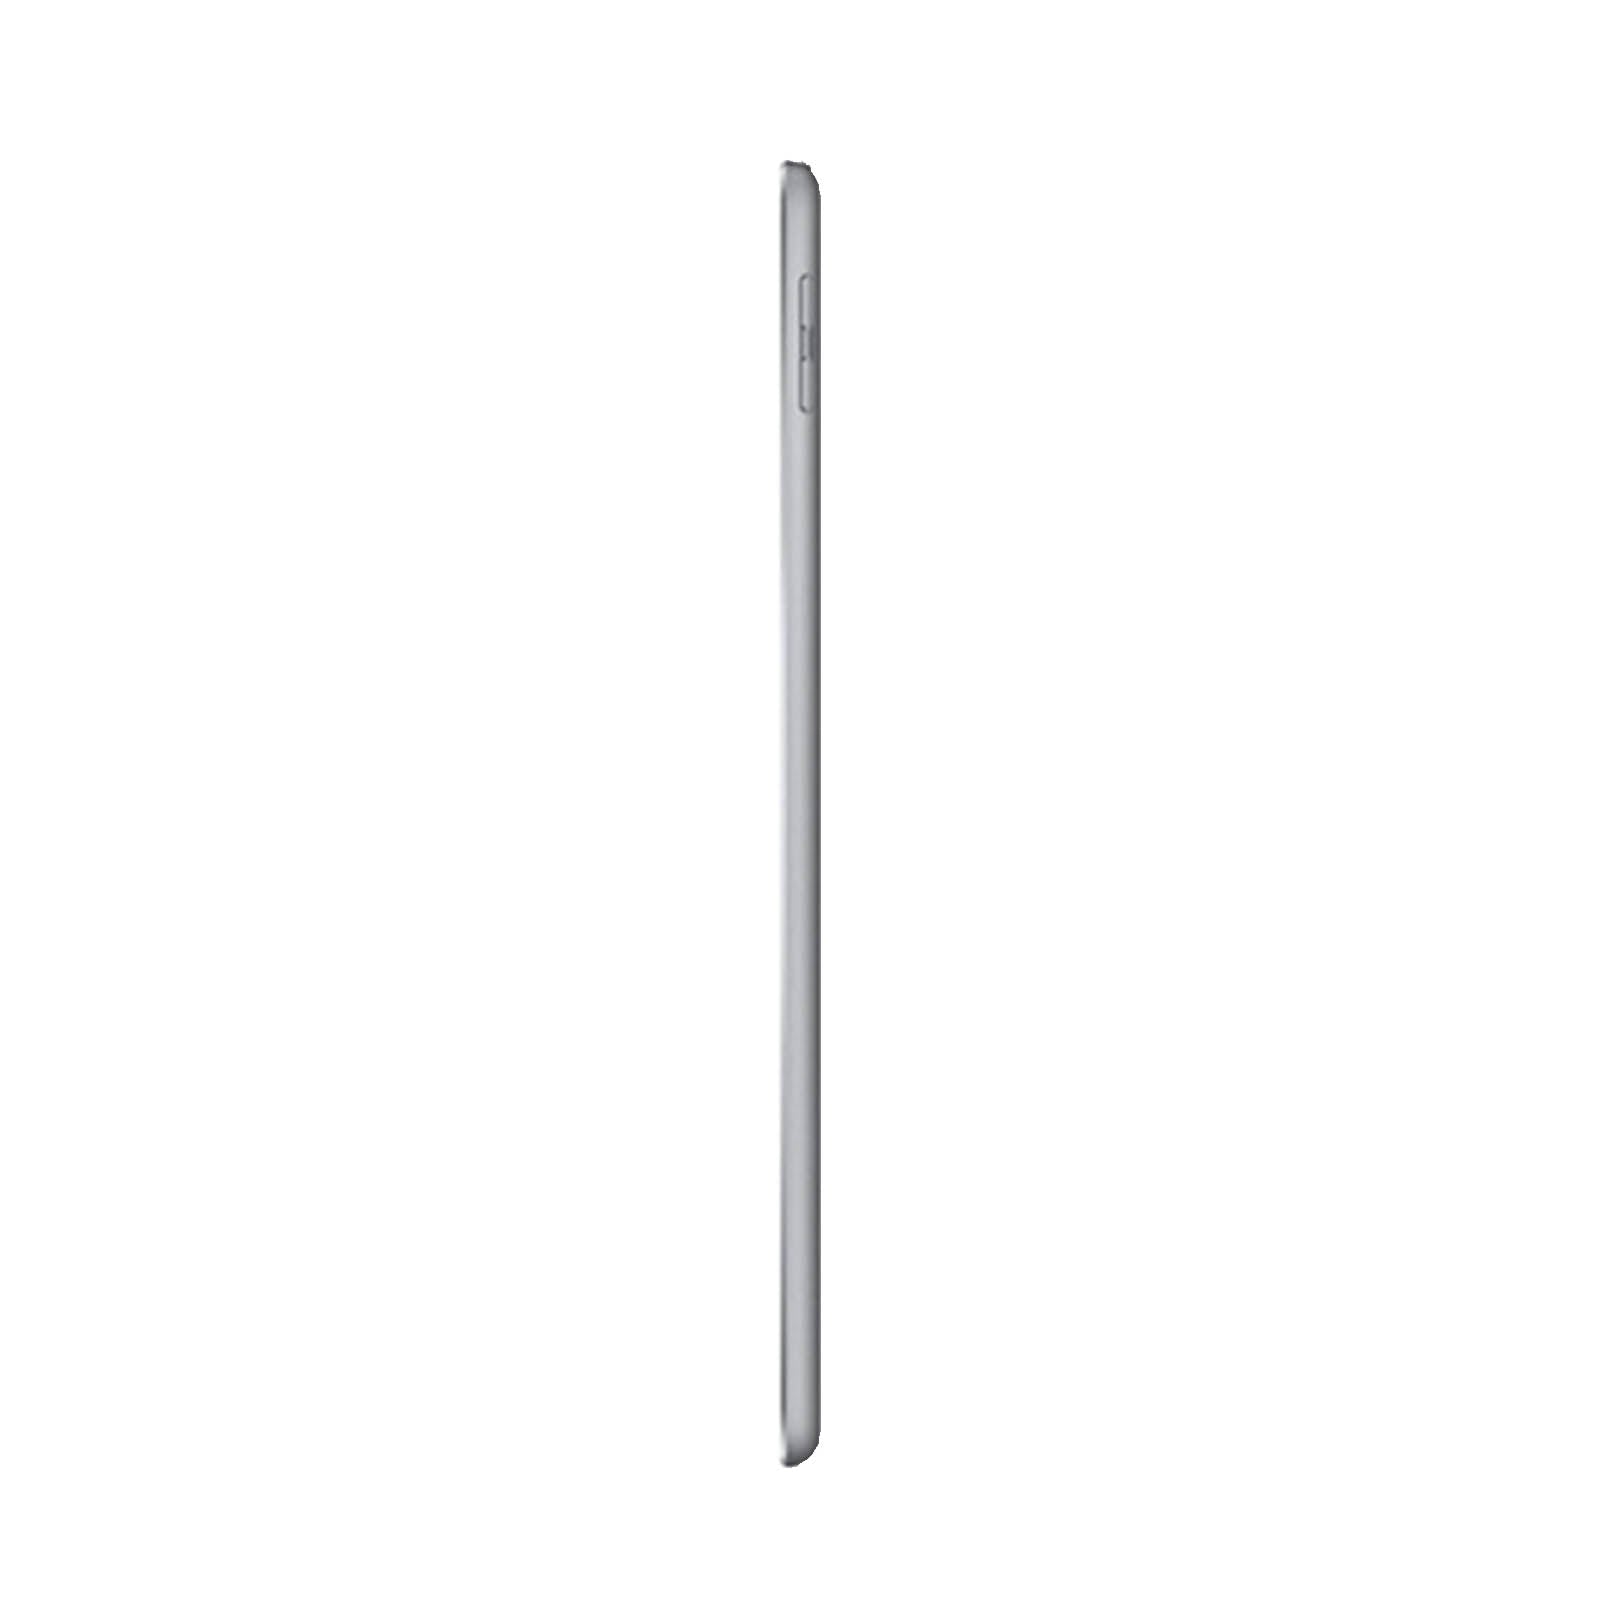 Apple iPad 5 32GB WiFi Space Grey - Good